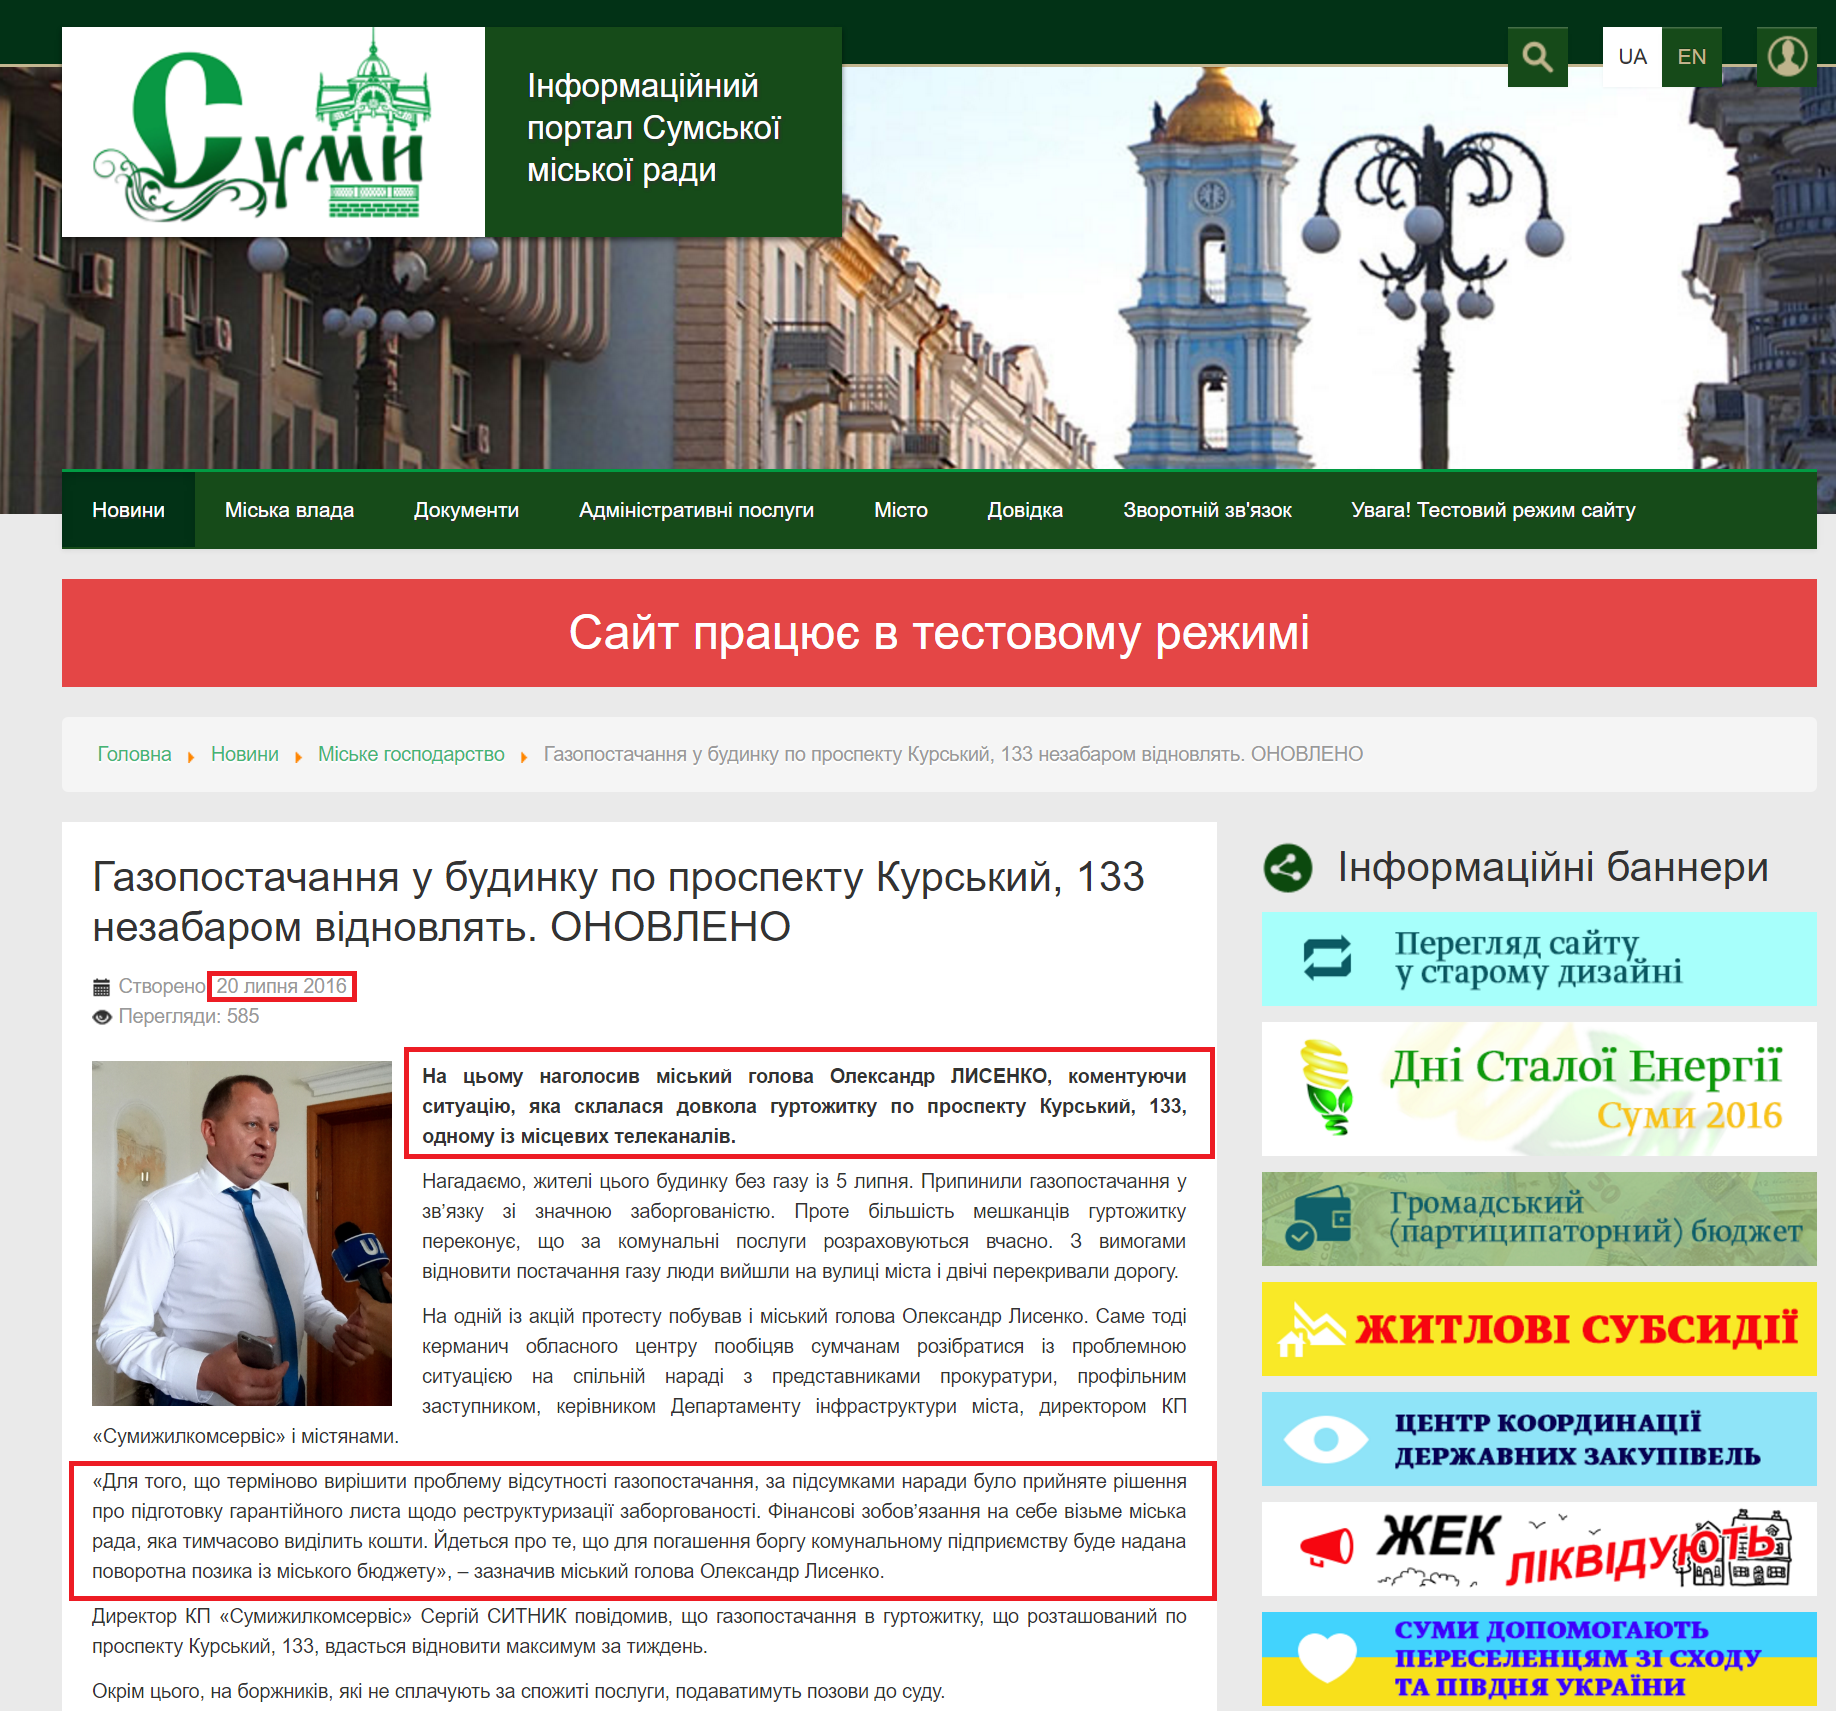 https://smr.gov.ua/uk/novini/miske-gospodarstvo/3315-gazopostachannya-u-budinku-po-prospektu-kurskij-133-nezabarom-vidnovlyat.html